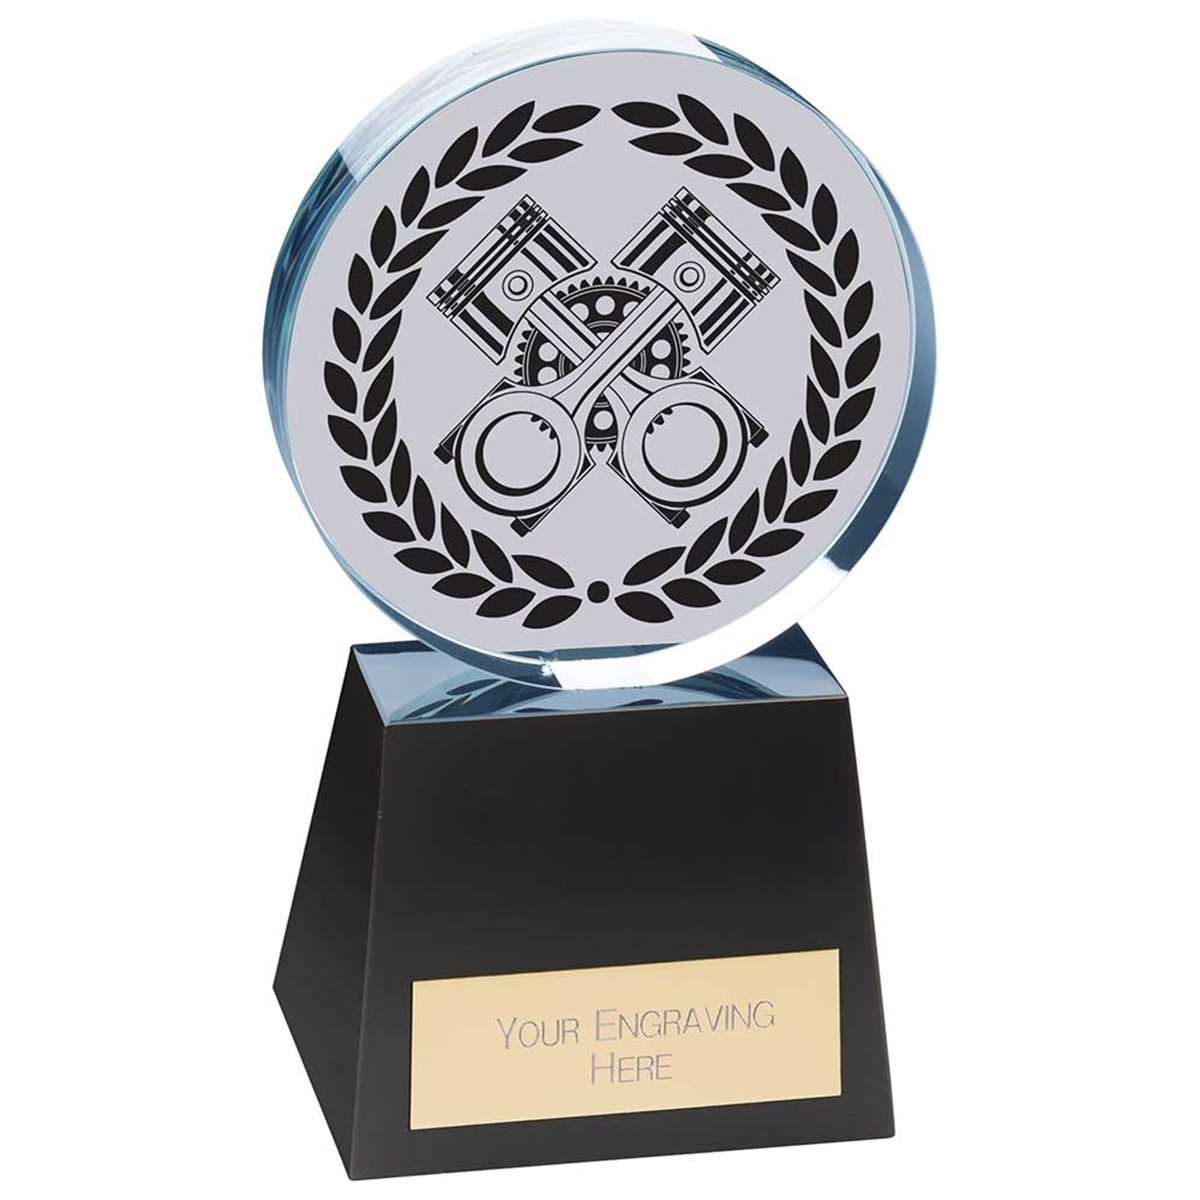 Emperor Motorsport Glass Award CR24348